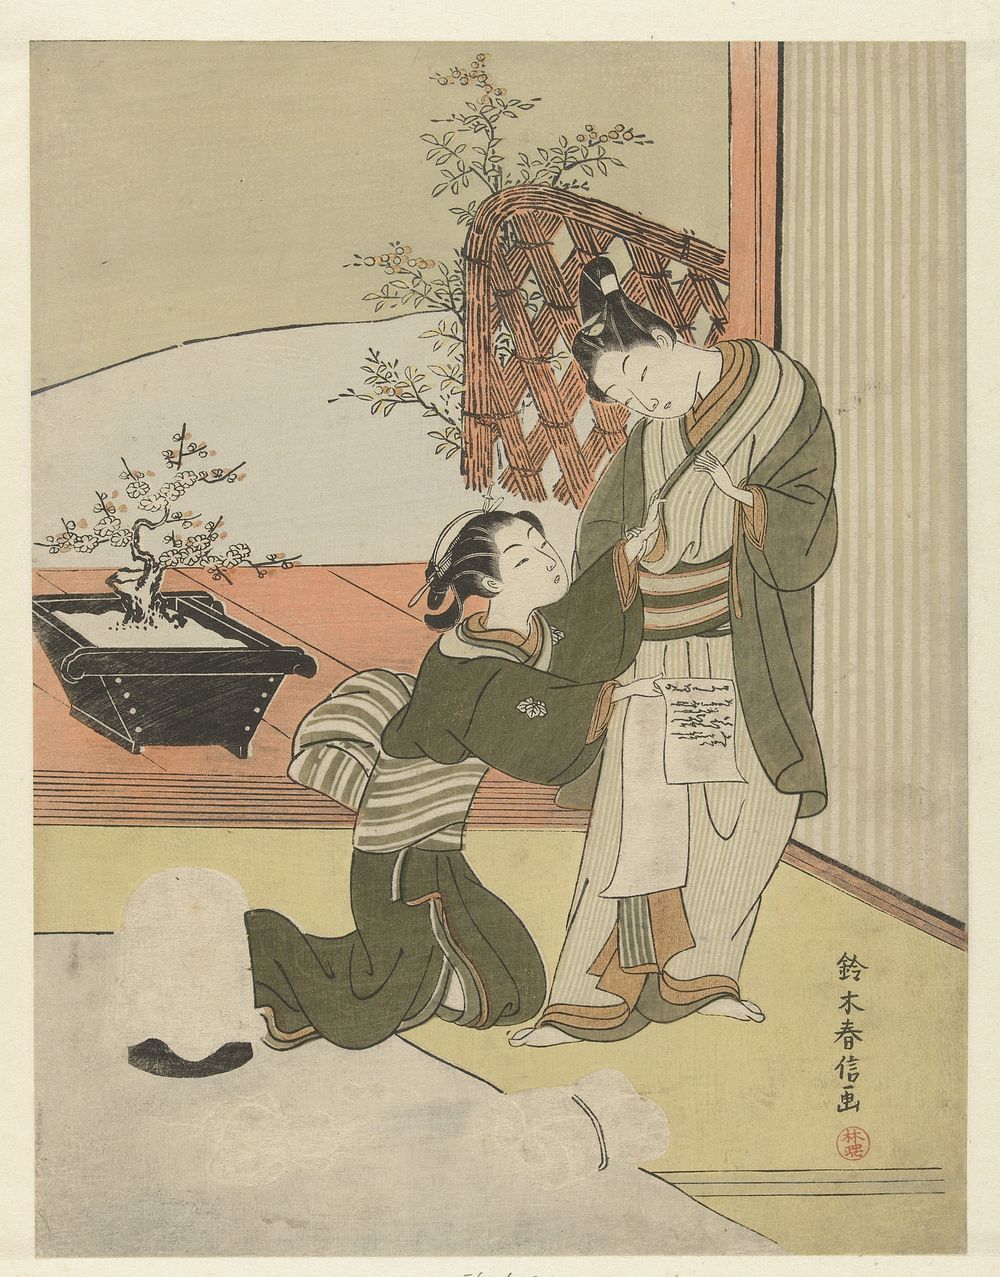 Jong stel met brief (1765 - 1770) by Suzuki Harunobu